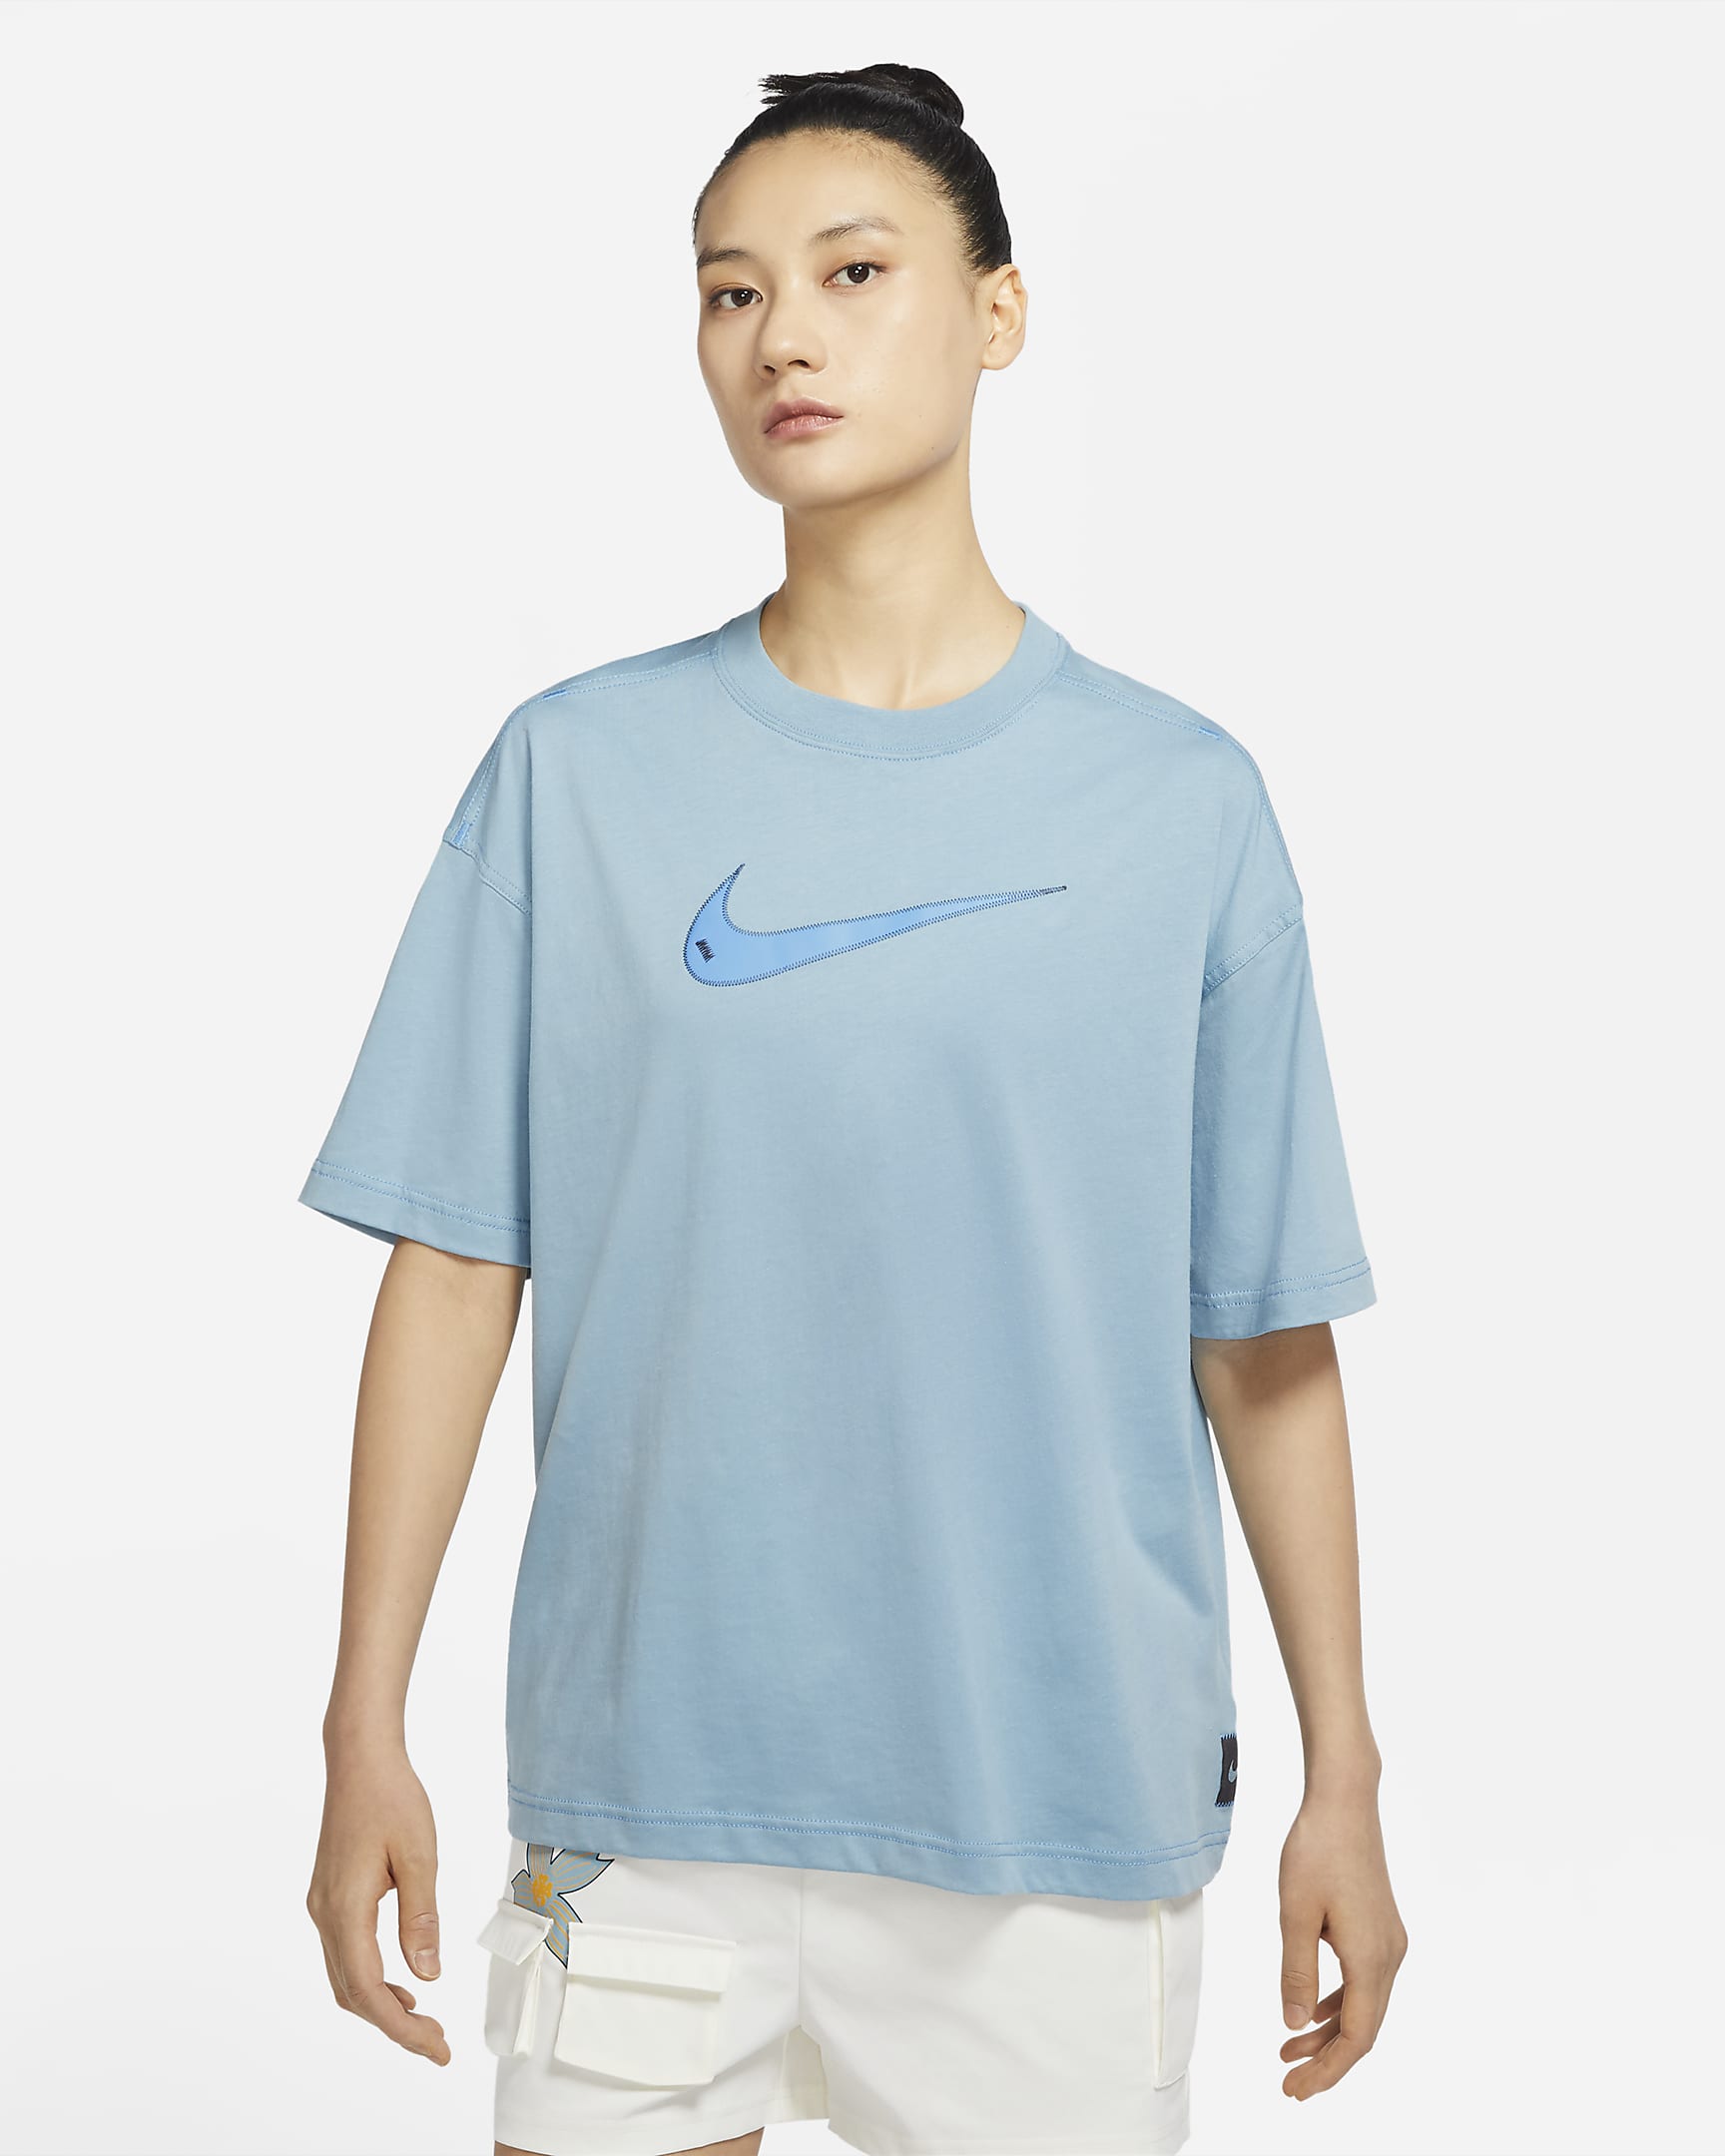 Nike Sportswear Swoosh Women's Short-Sleeve Top. Nike VN